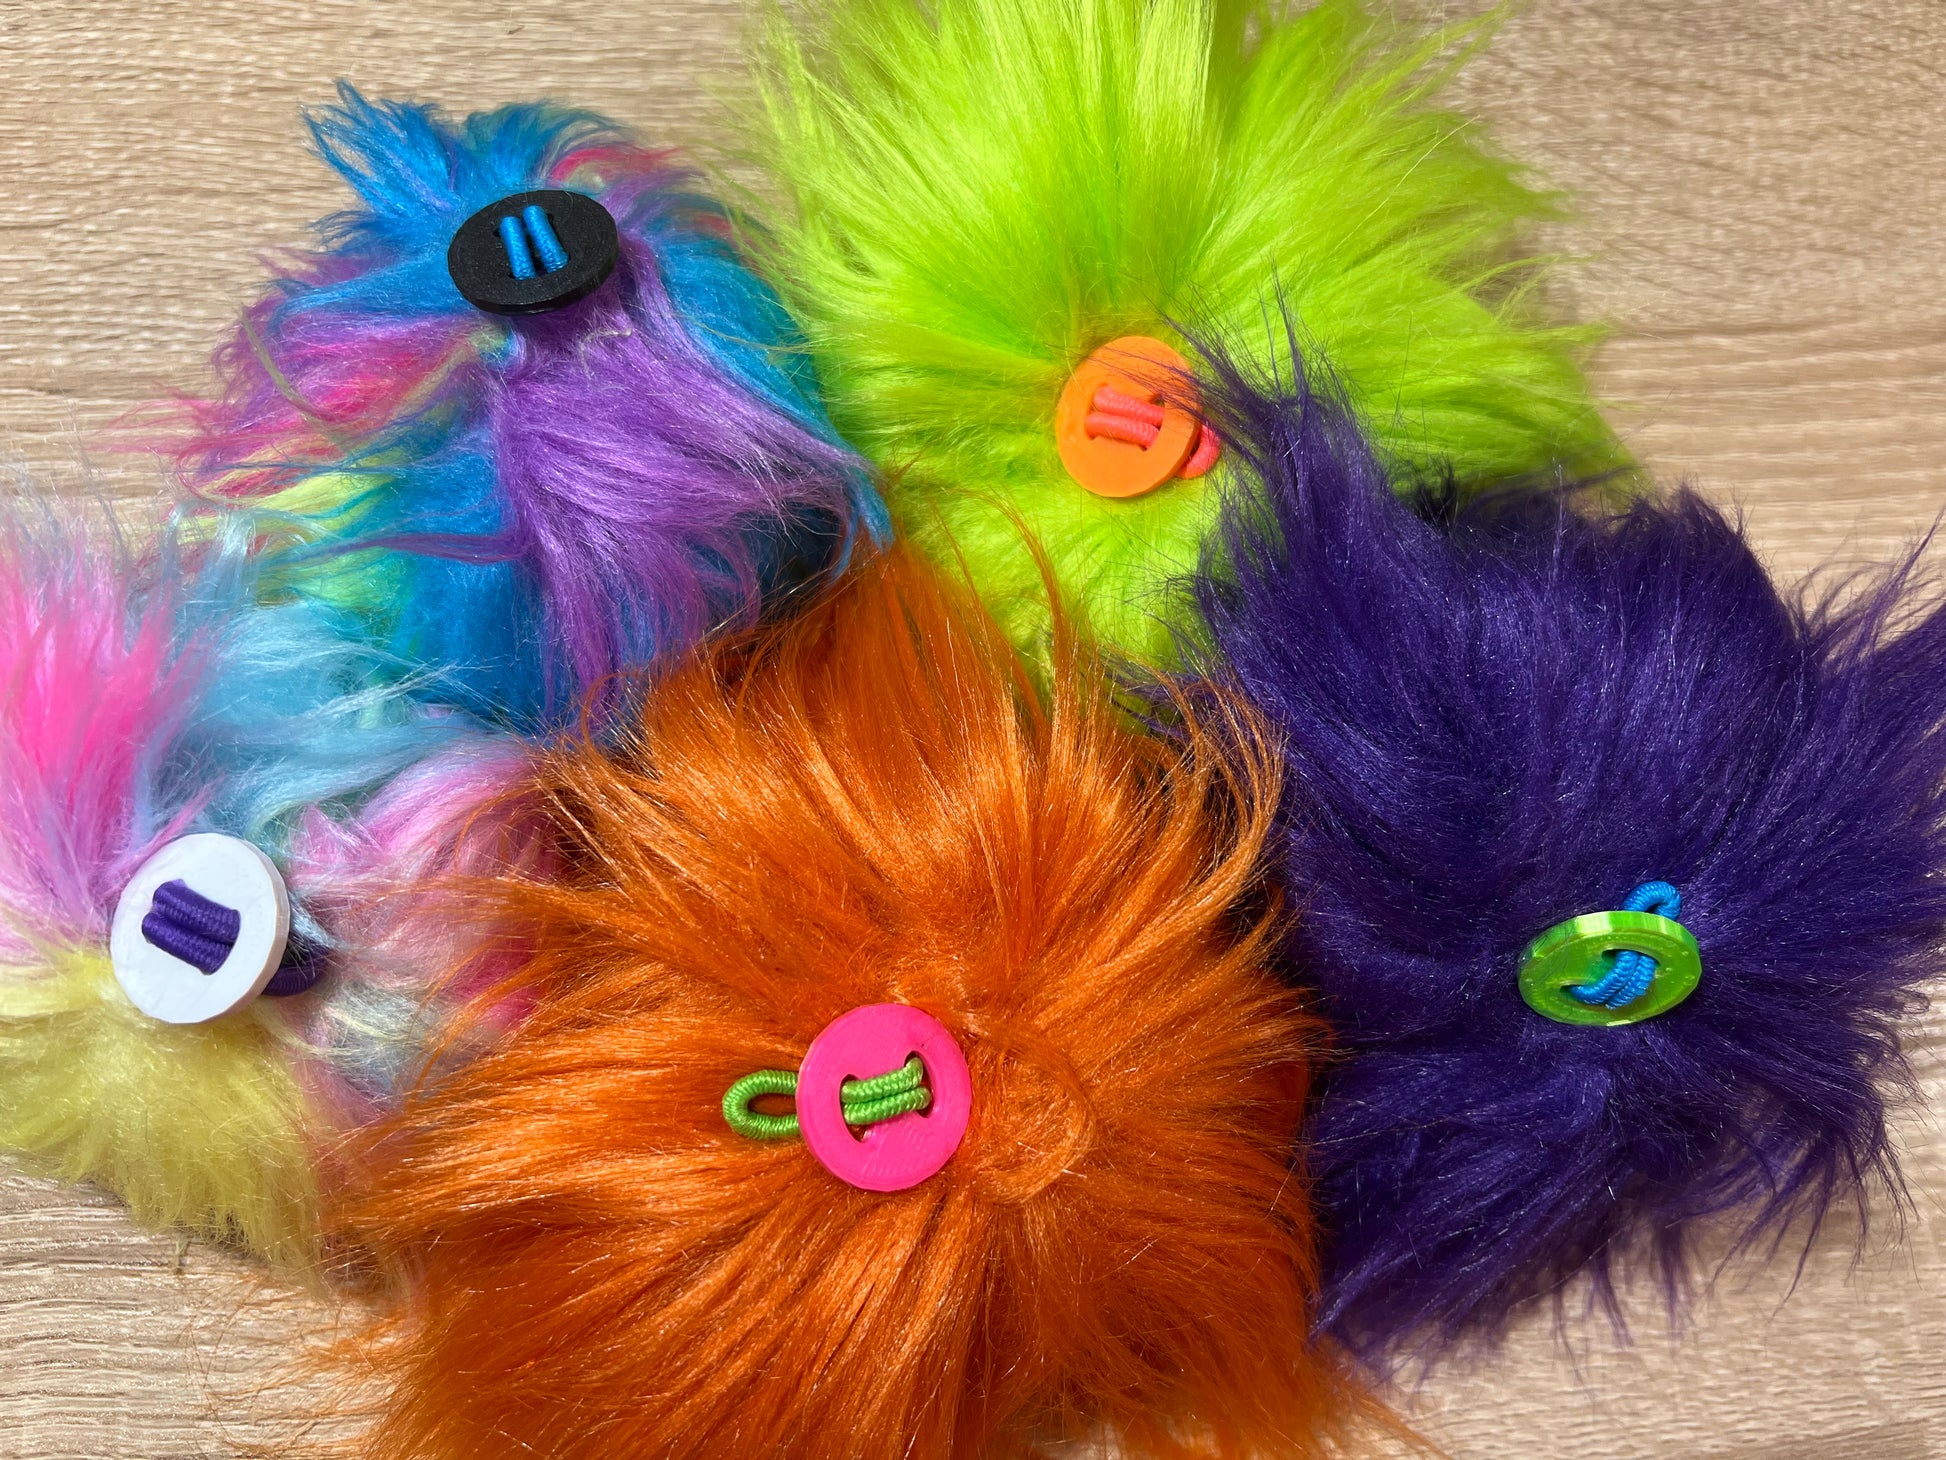 Rainbow Fluffy Pom Pom Keychain Fluffy Yarn Rainbow Gift 